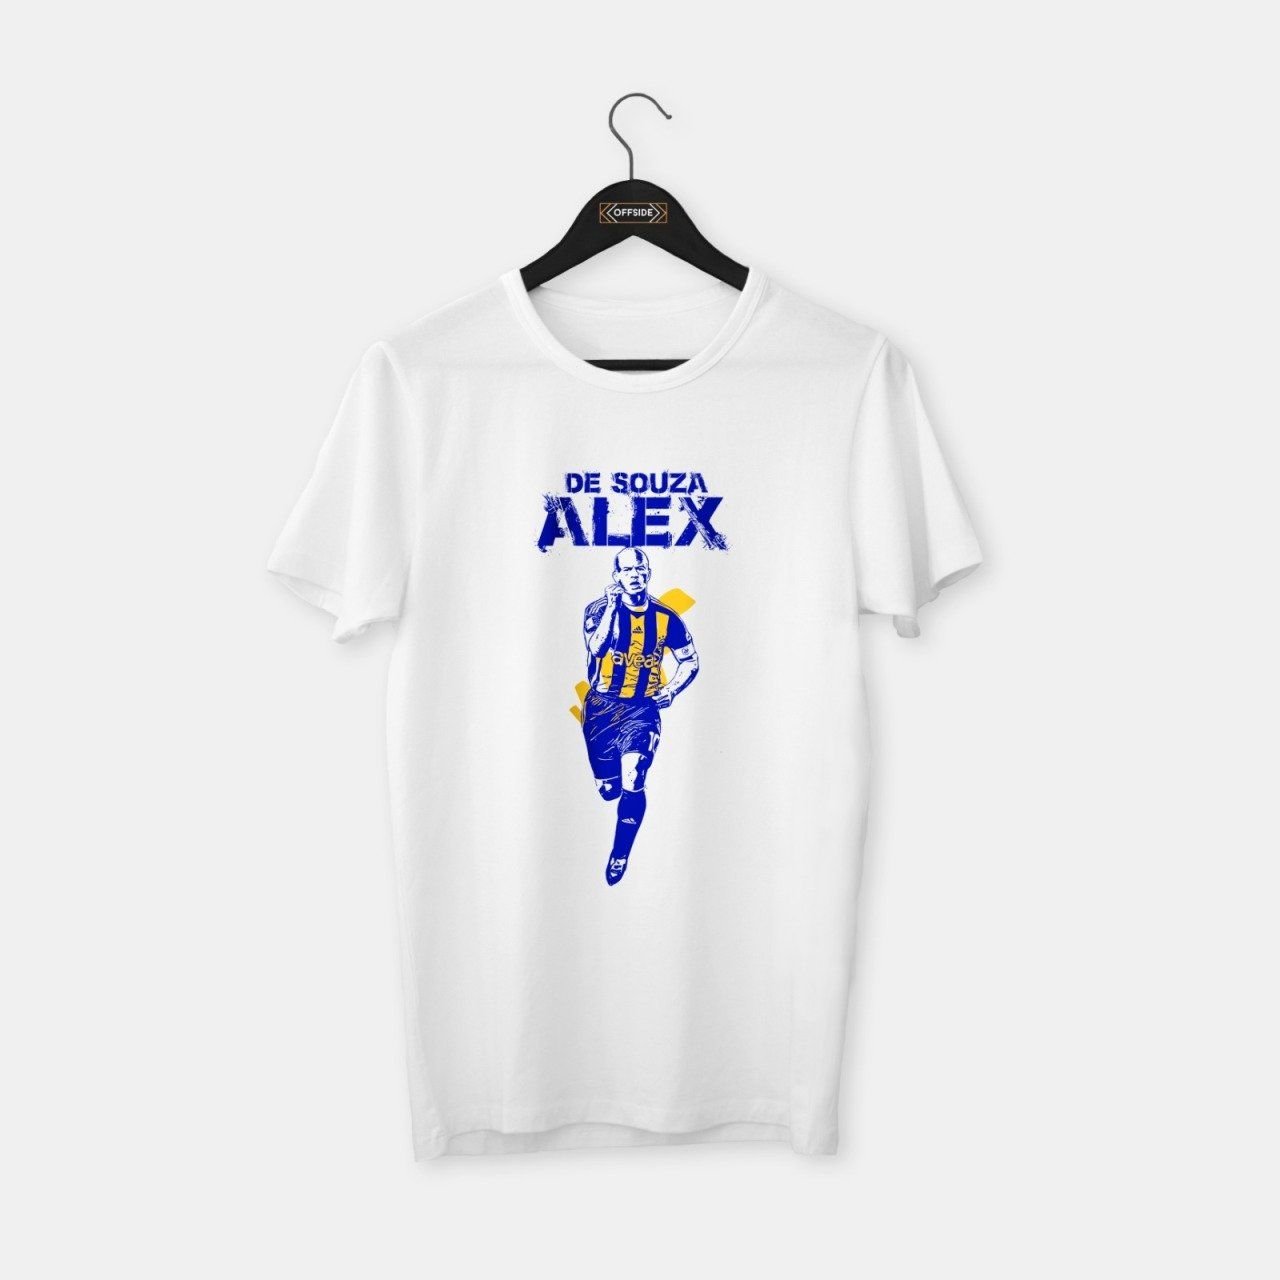 Alex T-shirt